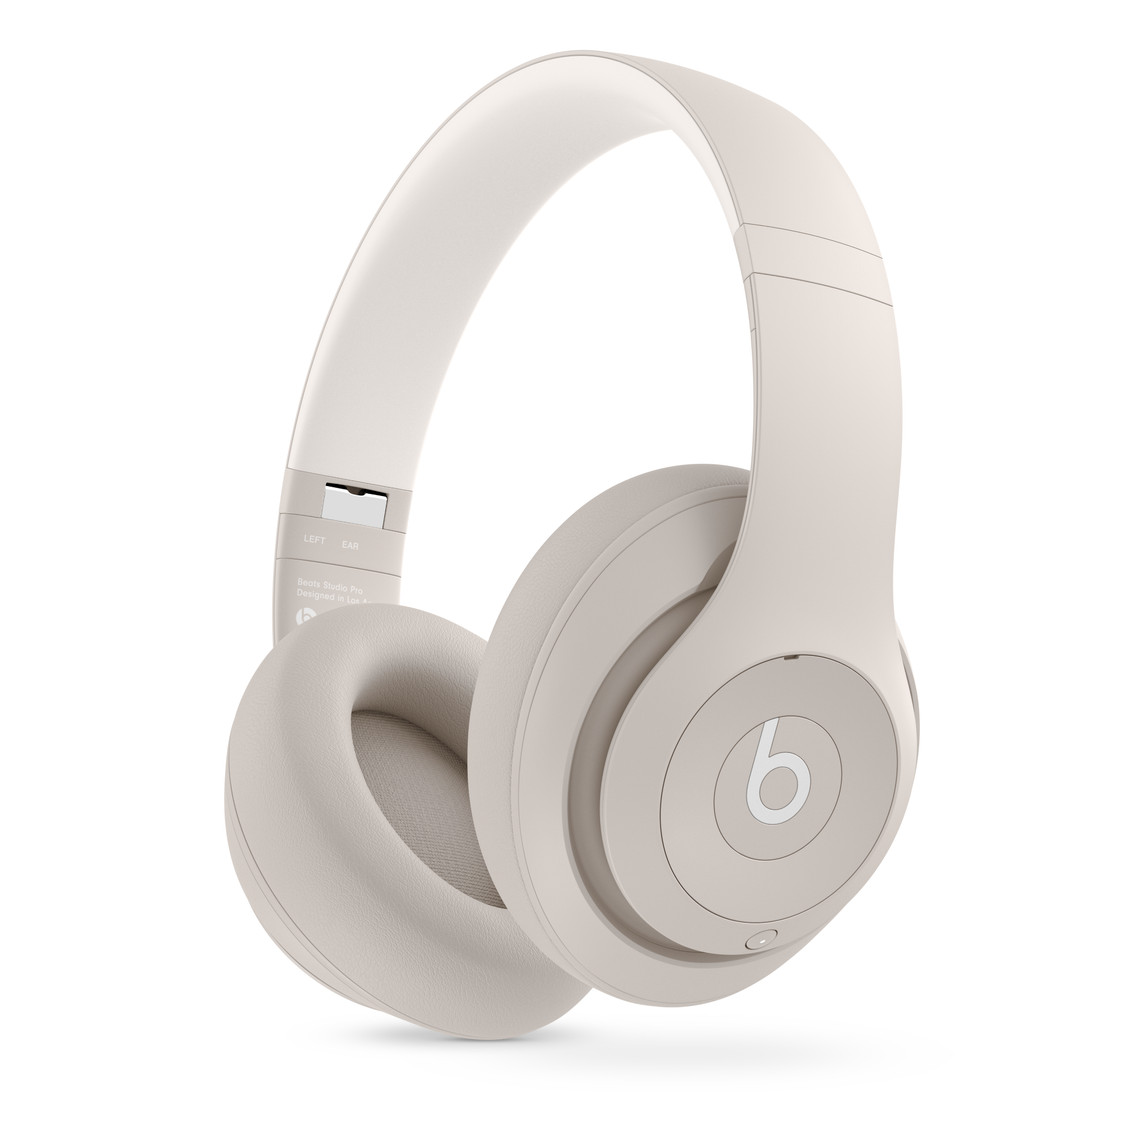 Fone de ouvido sem fio Beats Studio Pro arenito, com almofadas de couro Ultra-Plush projetadas para serem mais confortáveis ​​e resistentes.